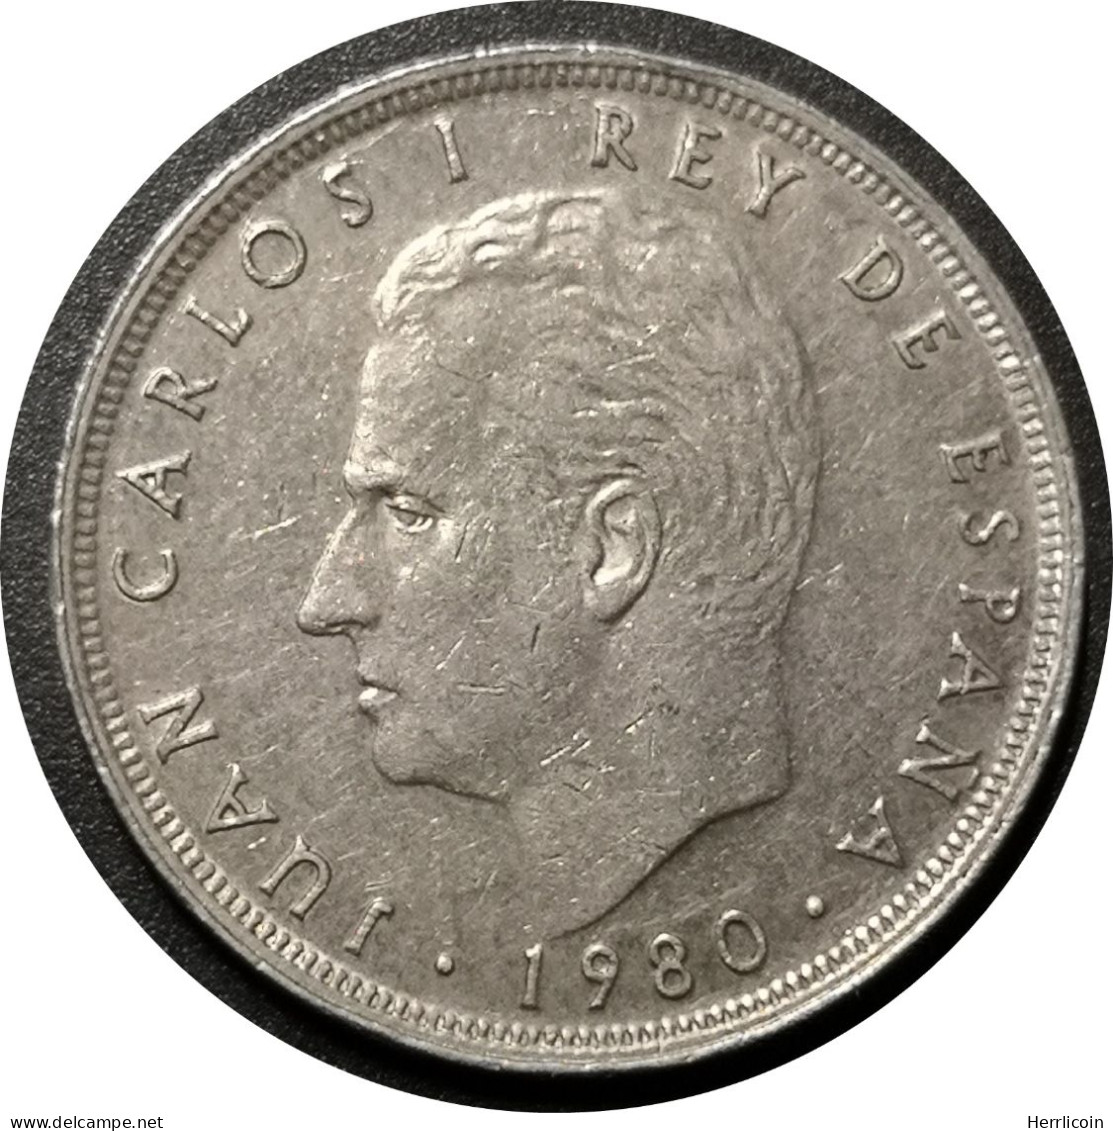 Monnaie Espagne - 1980 - 25 Pesetas España 82 - 25 Peseta